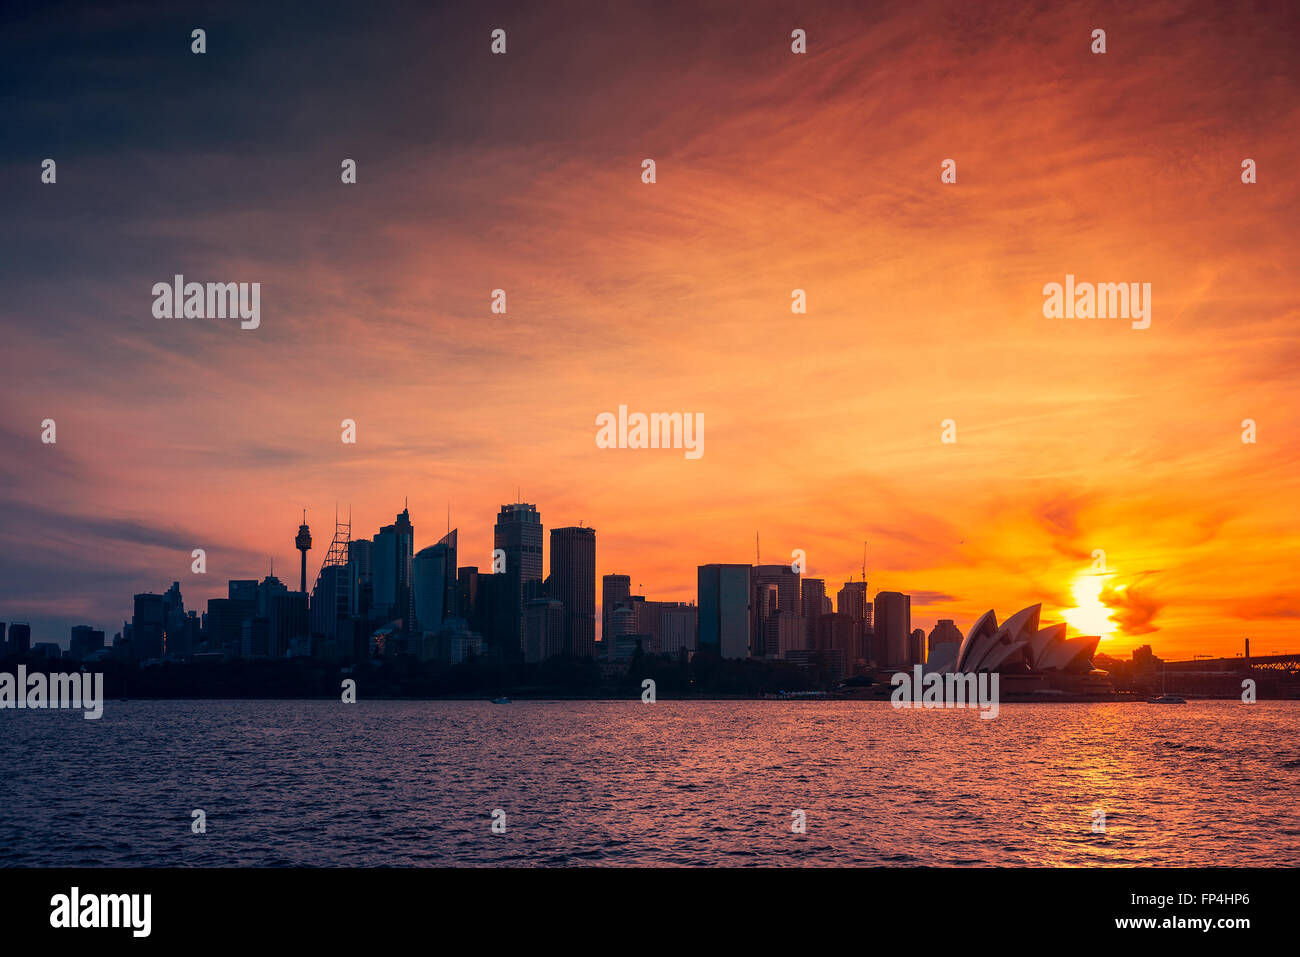 La città di Sydney skyline silhouette al tramonto, NSW, Australia. Cross-processing e color-tonificare gli effetti applicati Foto Stock